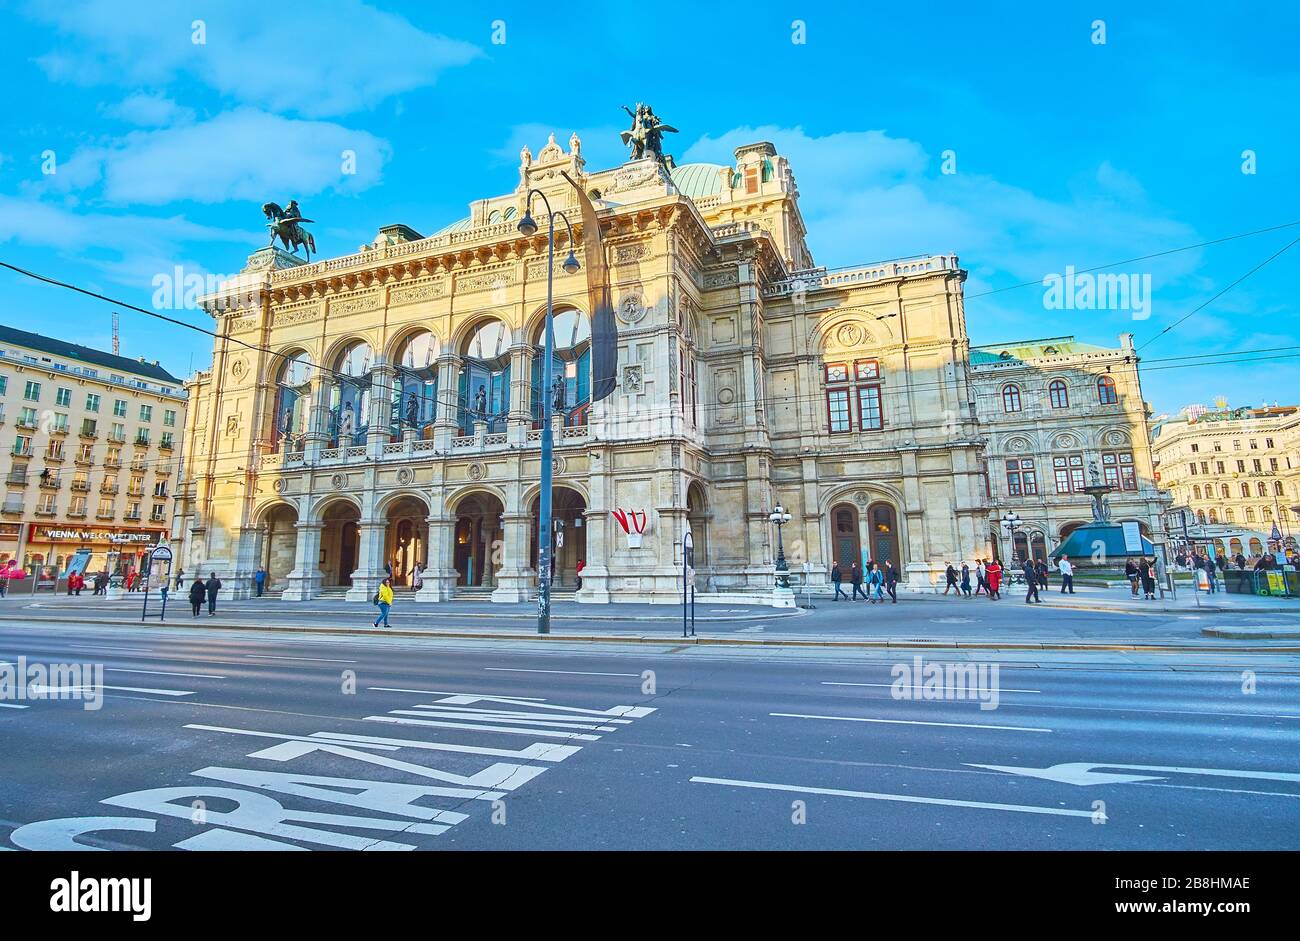 VIENNE, AUTRICHE - 19 FÉVRIER 2019: La façade de l'Opéra, décorée avec des guirlandes en pierre, des colonnes murales, des arcades, des fenêtres voûtées et des statues en bronze Banque D'Images